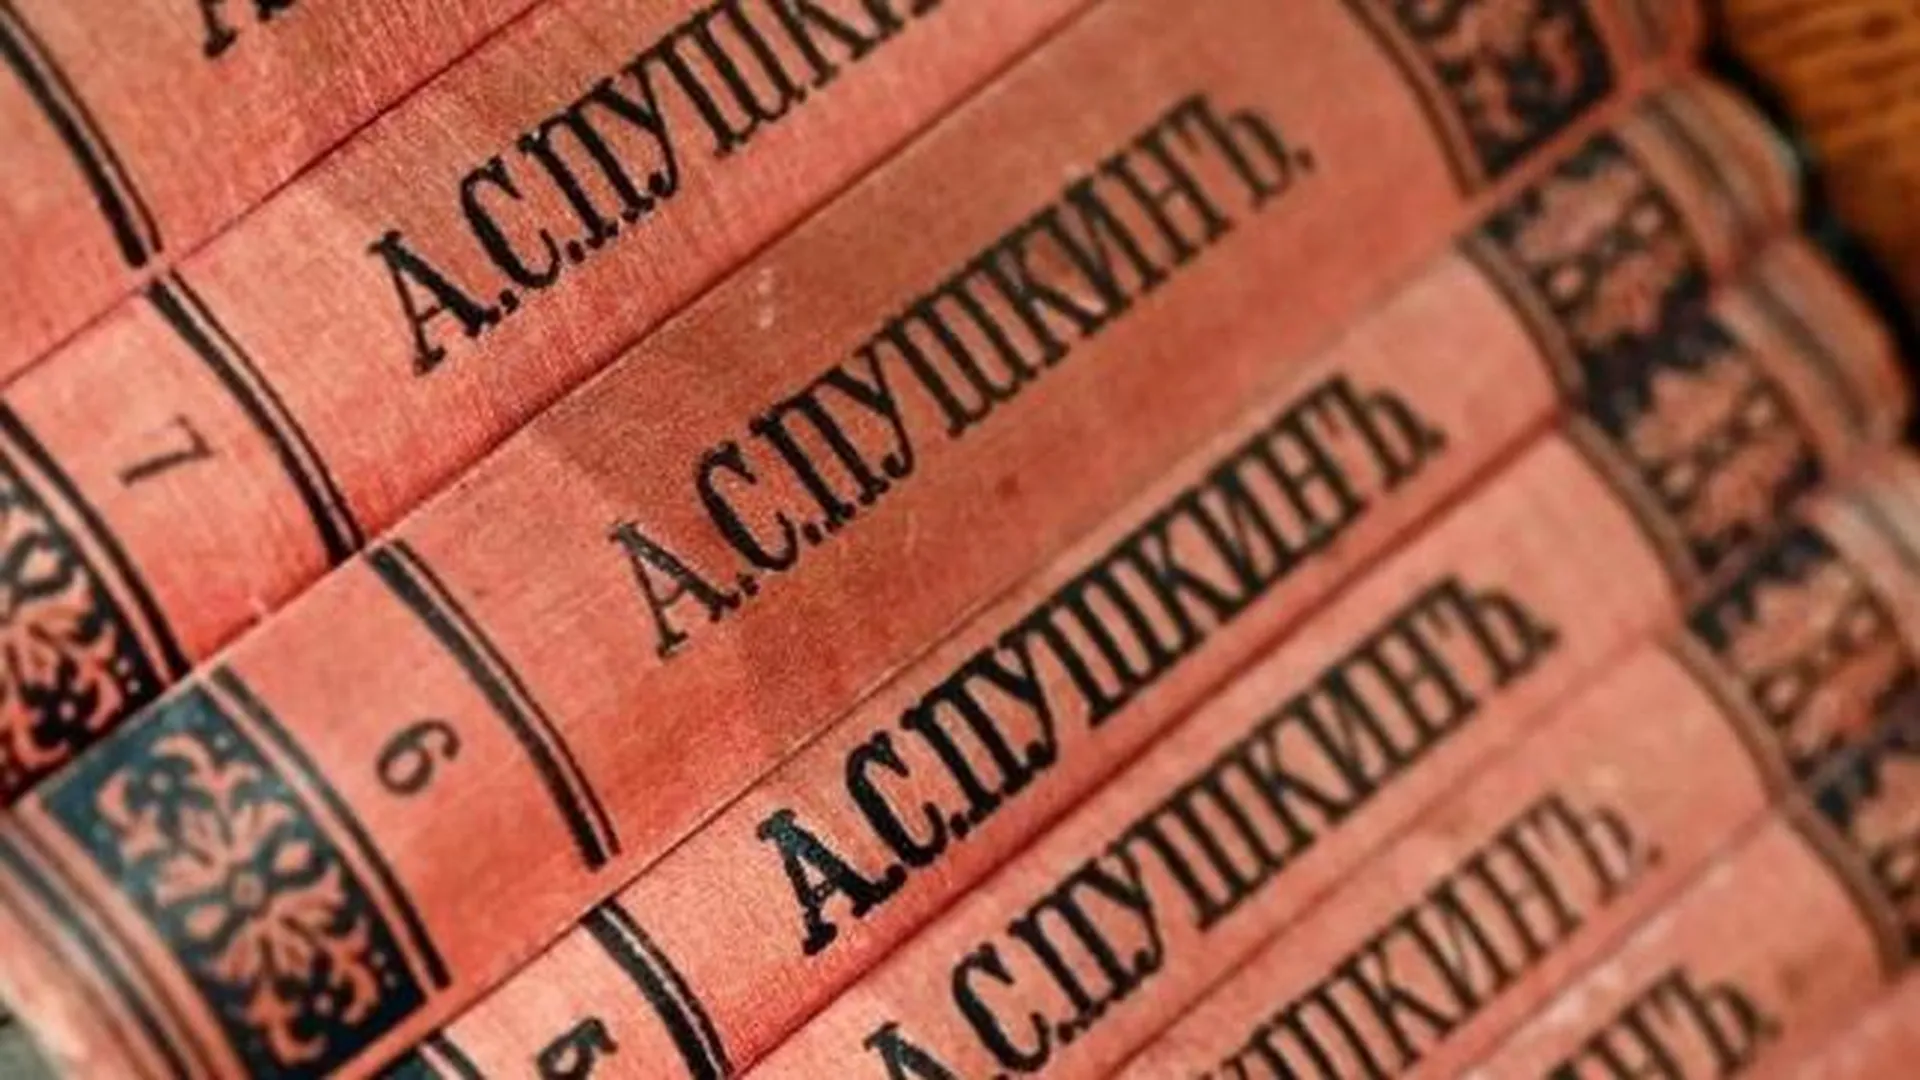 «Операция Пушкин». Раритетные издания российских классиков похитили в библиотеках Европы